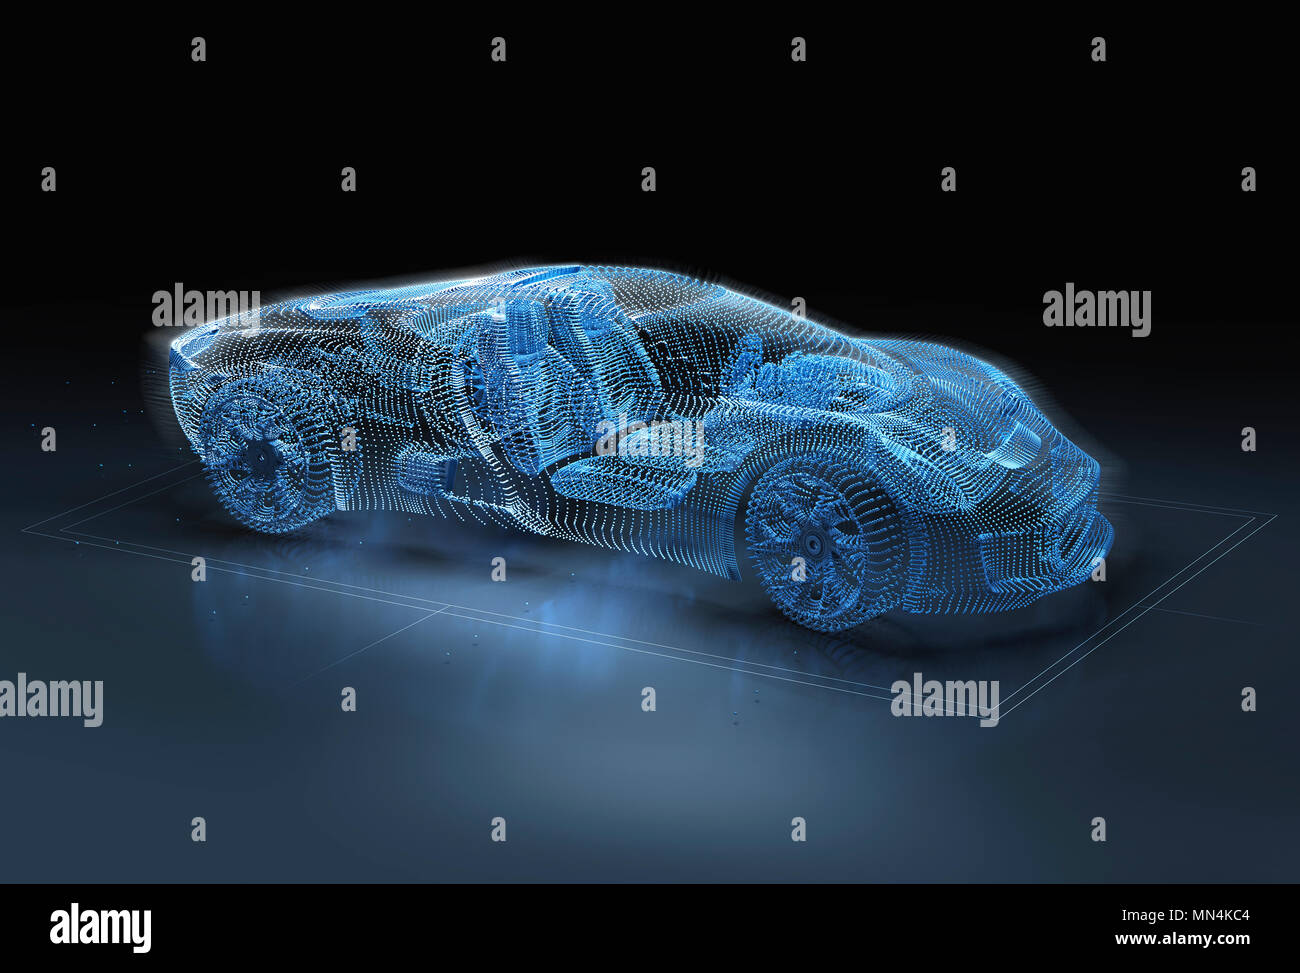 Imagen generada por ordenador de azul, coche deportivo de lujo Foto de stock